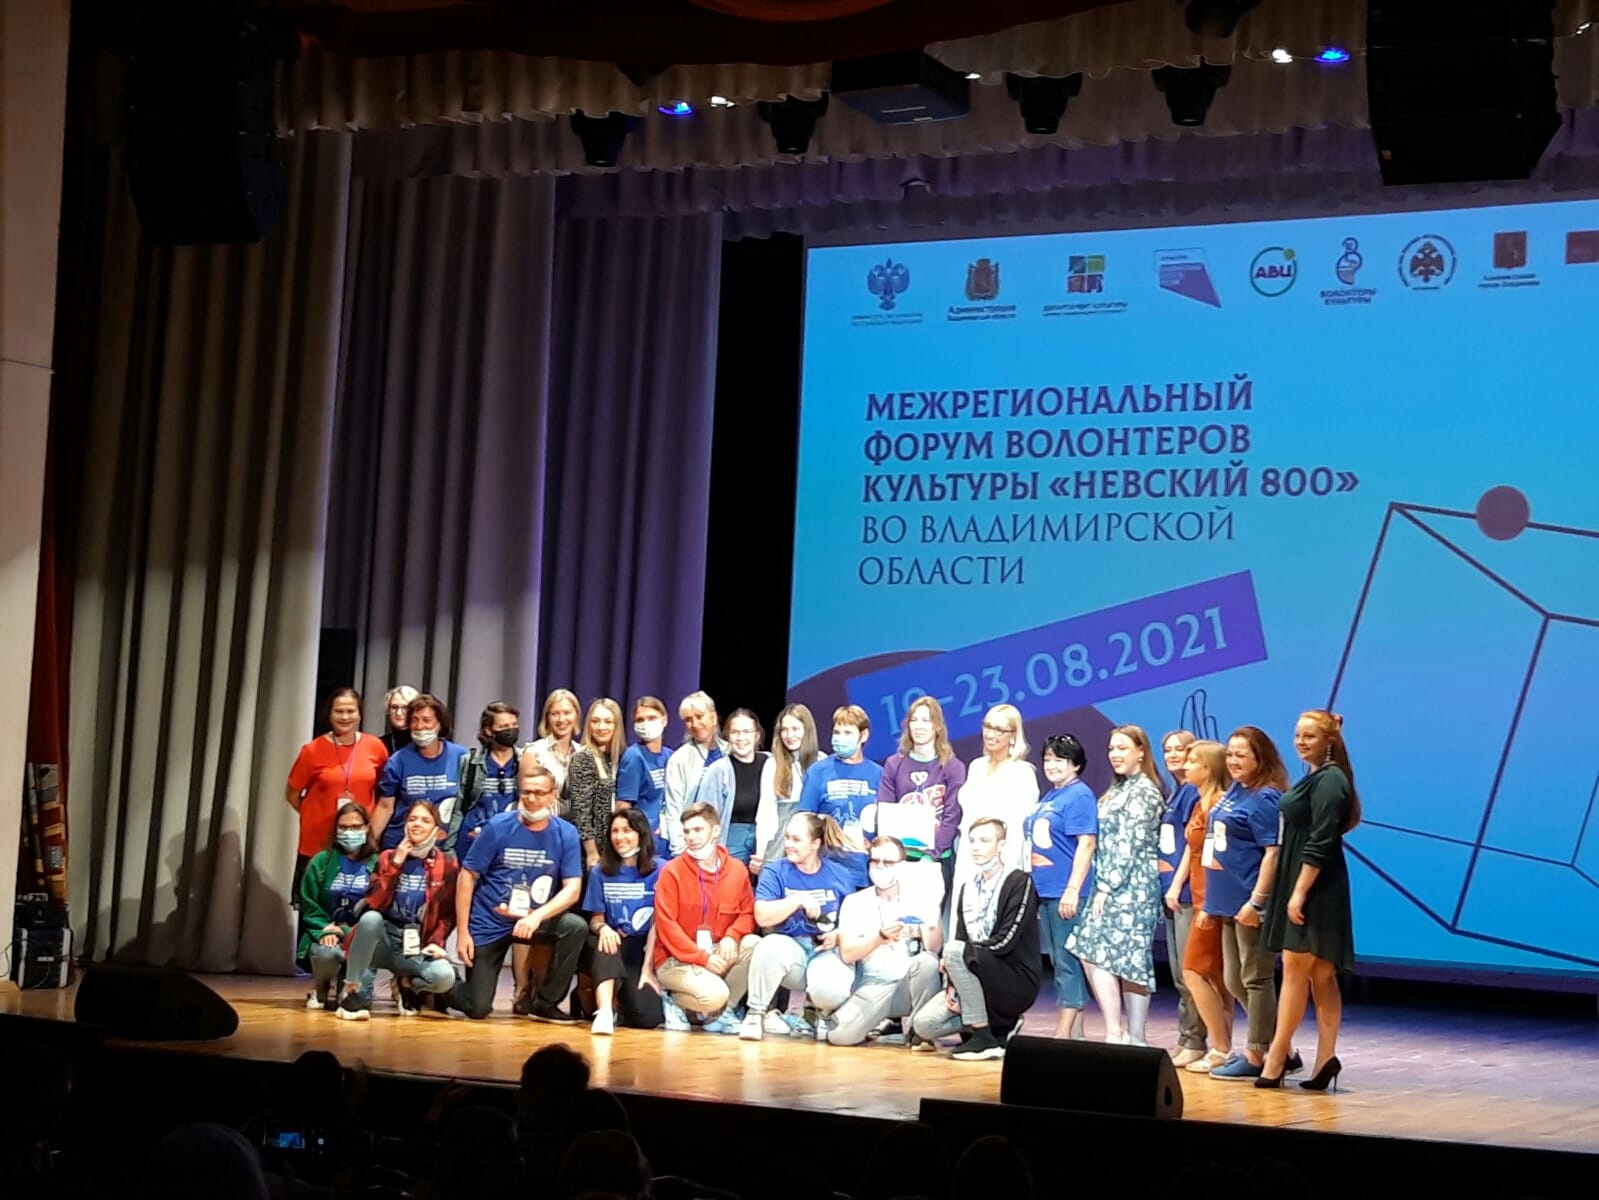 Брянские волонтеры культуры обменялись опытом работы на форуме «Невский 800»